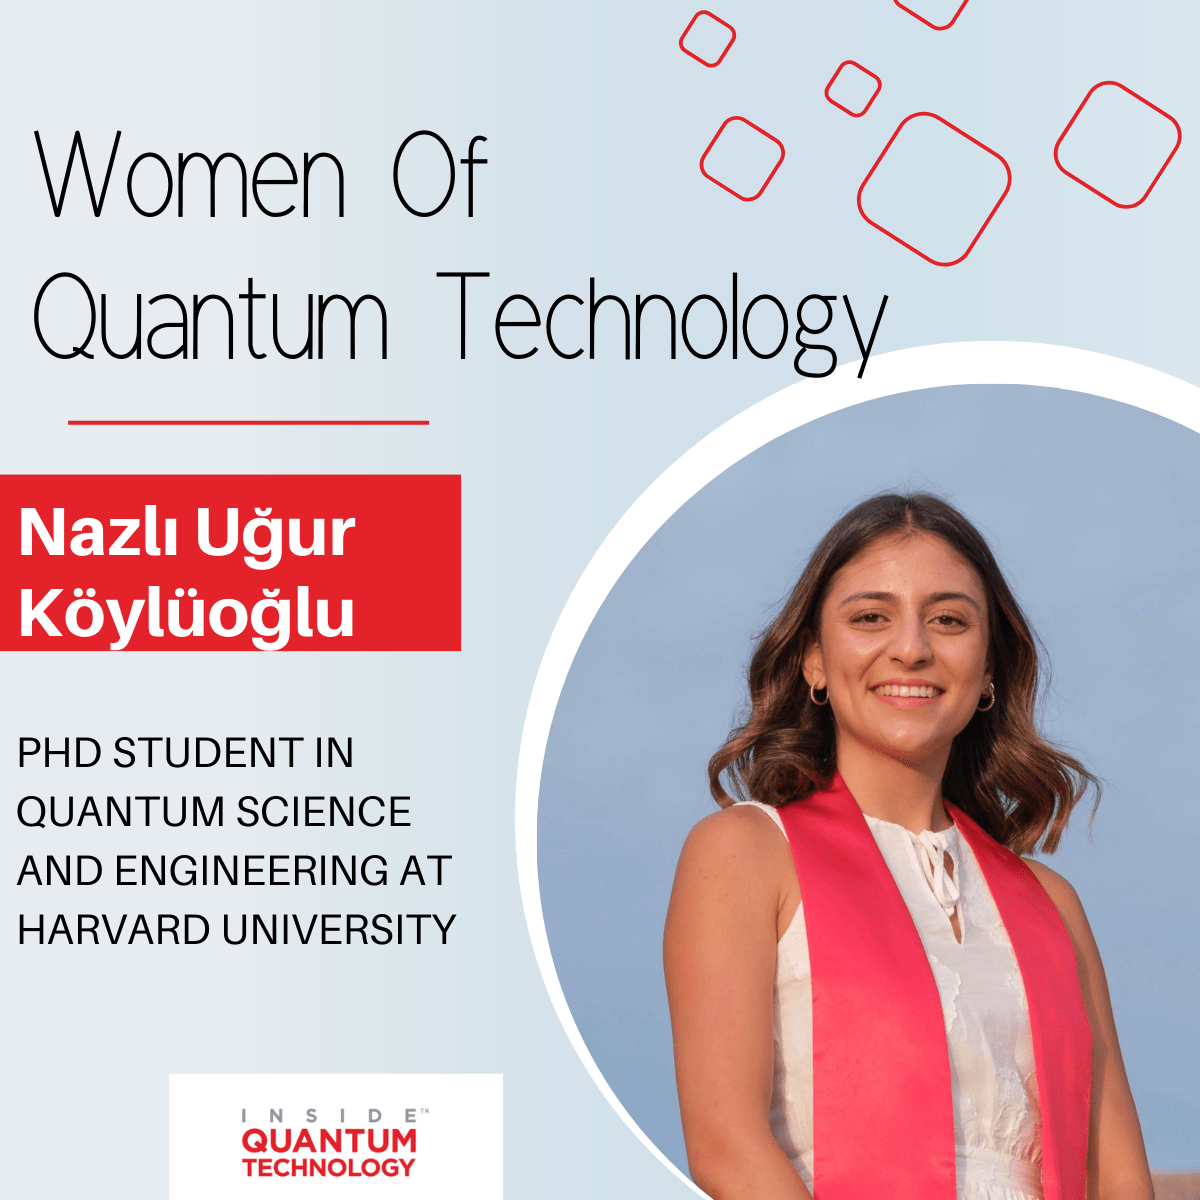 کوانٹم ٹیکنالوجی کی خواتین: ہارورڈ یونیورسٹی کی Nazlı Uğur Köylüoğlu - کوانٹم ٹیکنالوجی کے اندر